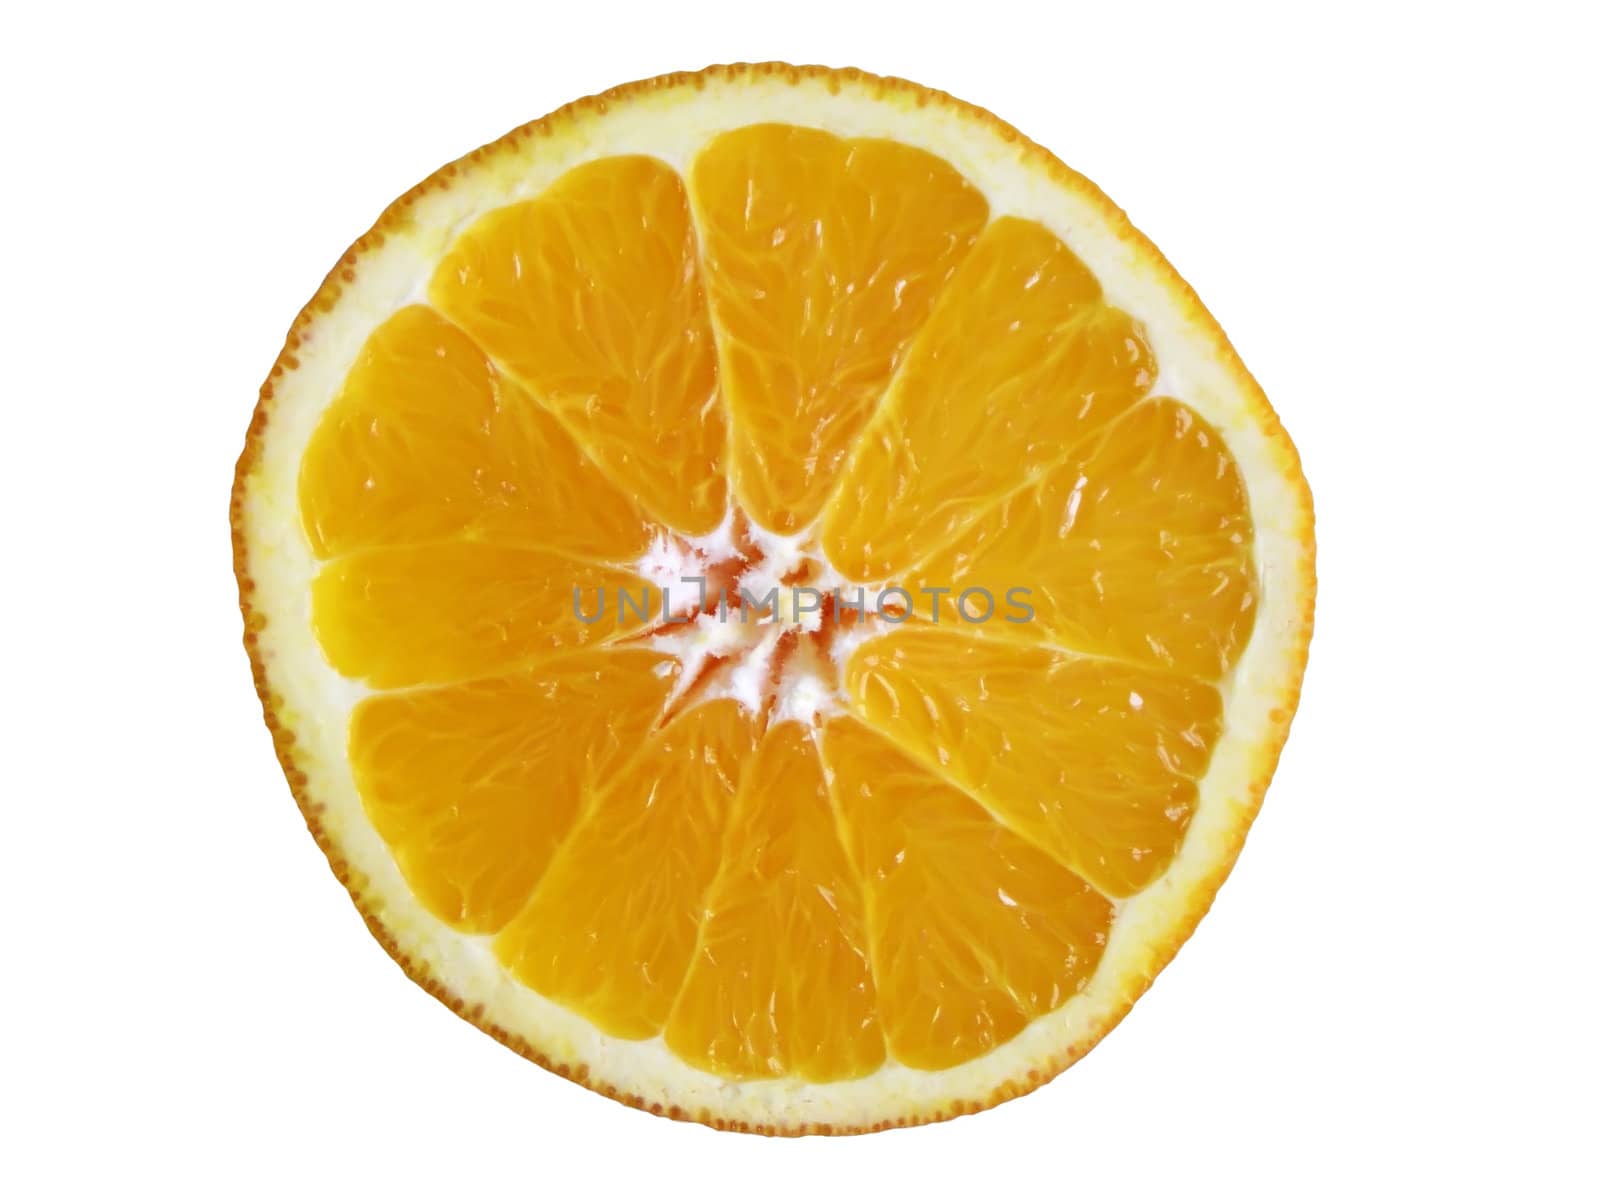 Fresh juicy orange slice on white background